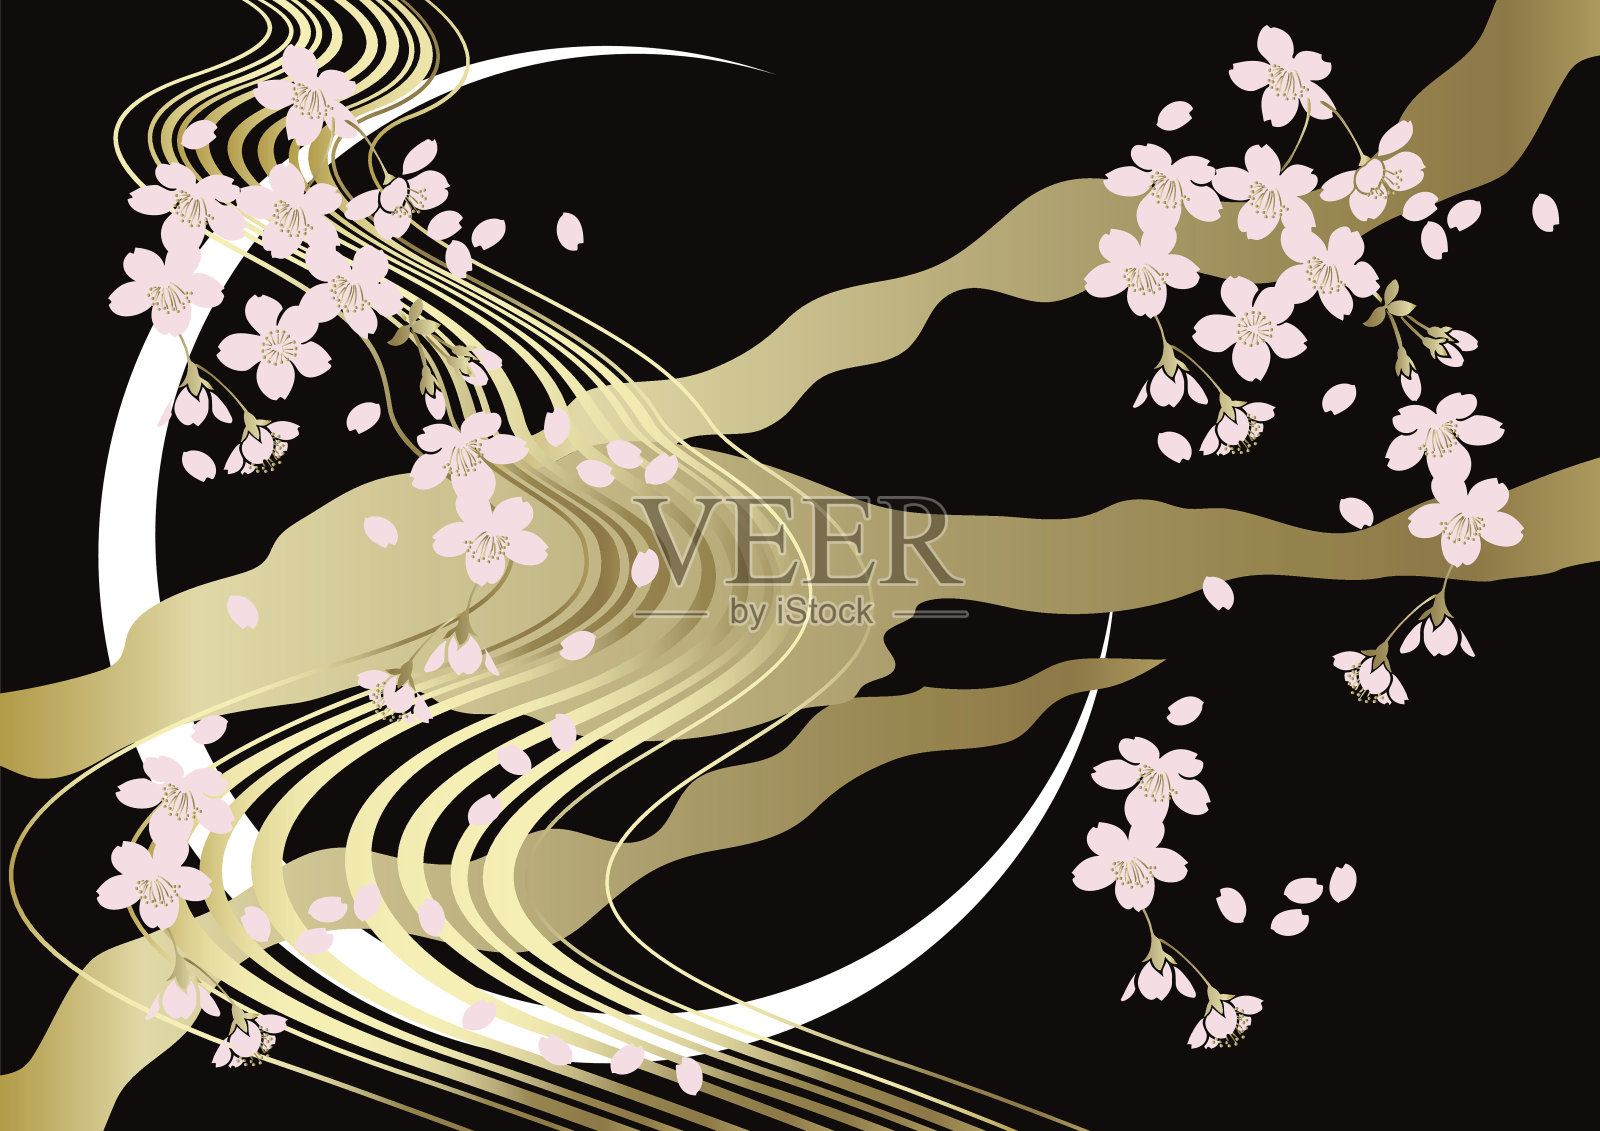 樱花背景日式风格插画图片素材